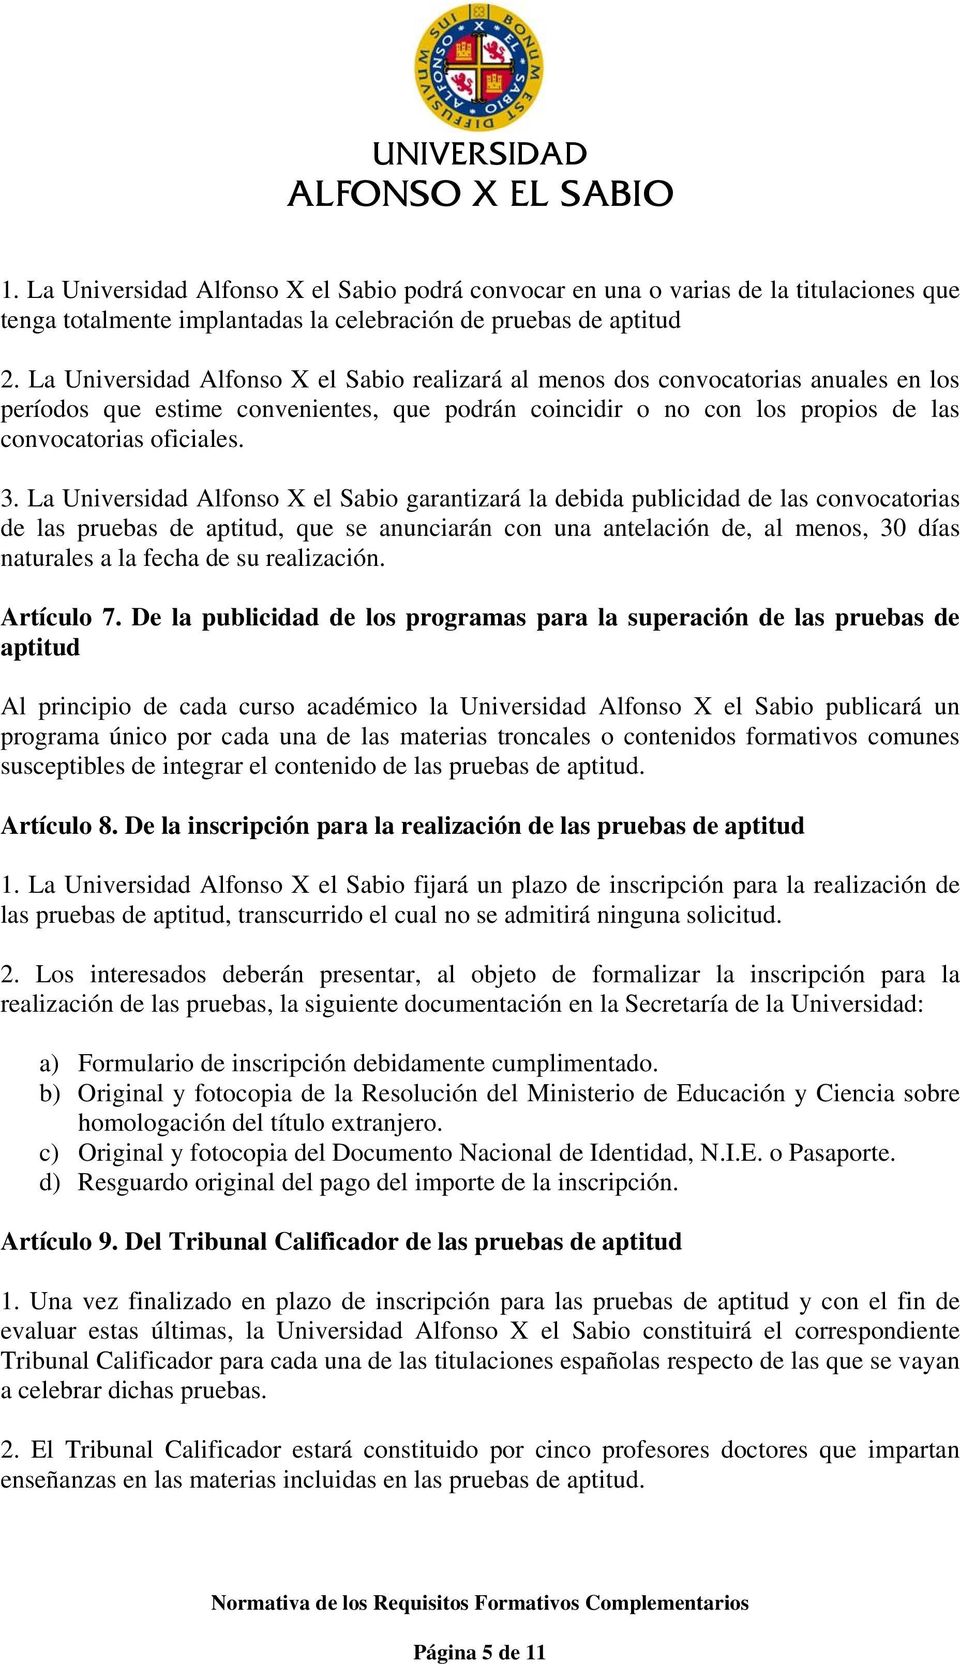 La Universidad Alfonso X el Sabio garantizará la debida publicidad de las convocatorias de las pruebas de aptitud, que se anunciarán con una antelación de, al menos, 30 días naturales a la fecha de